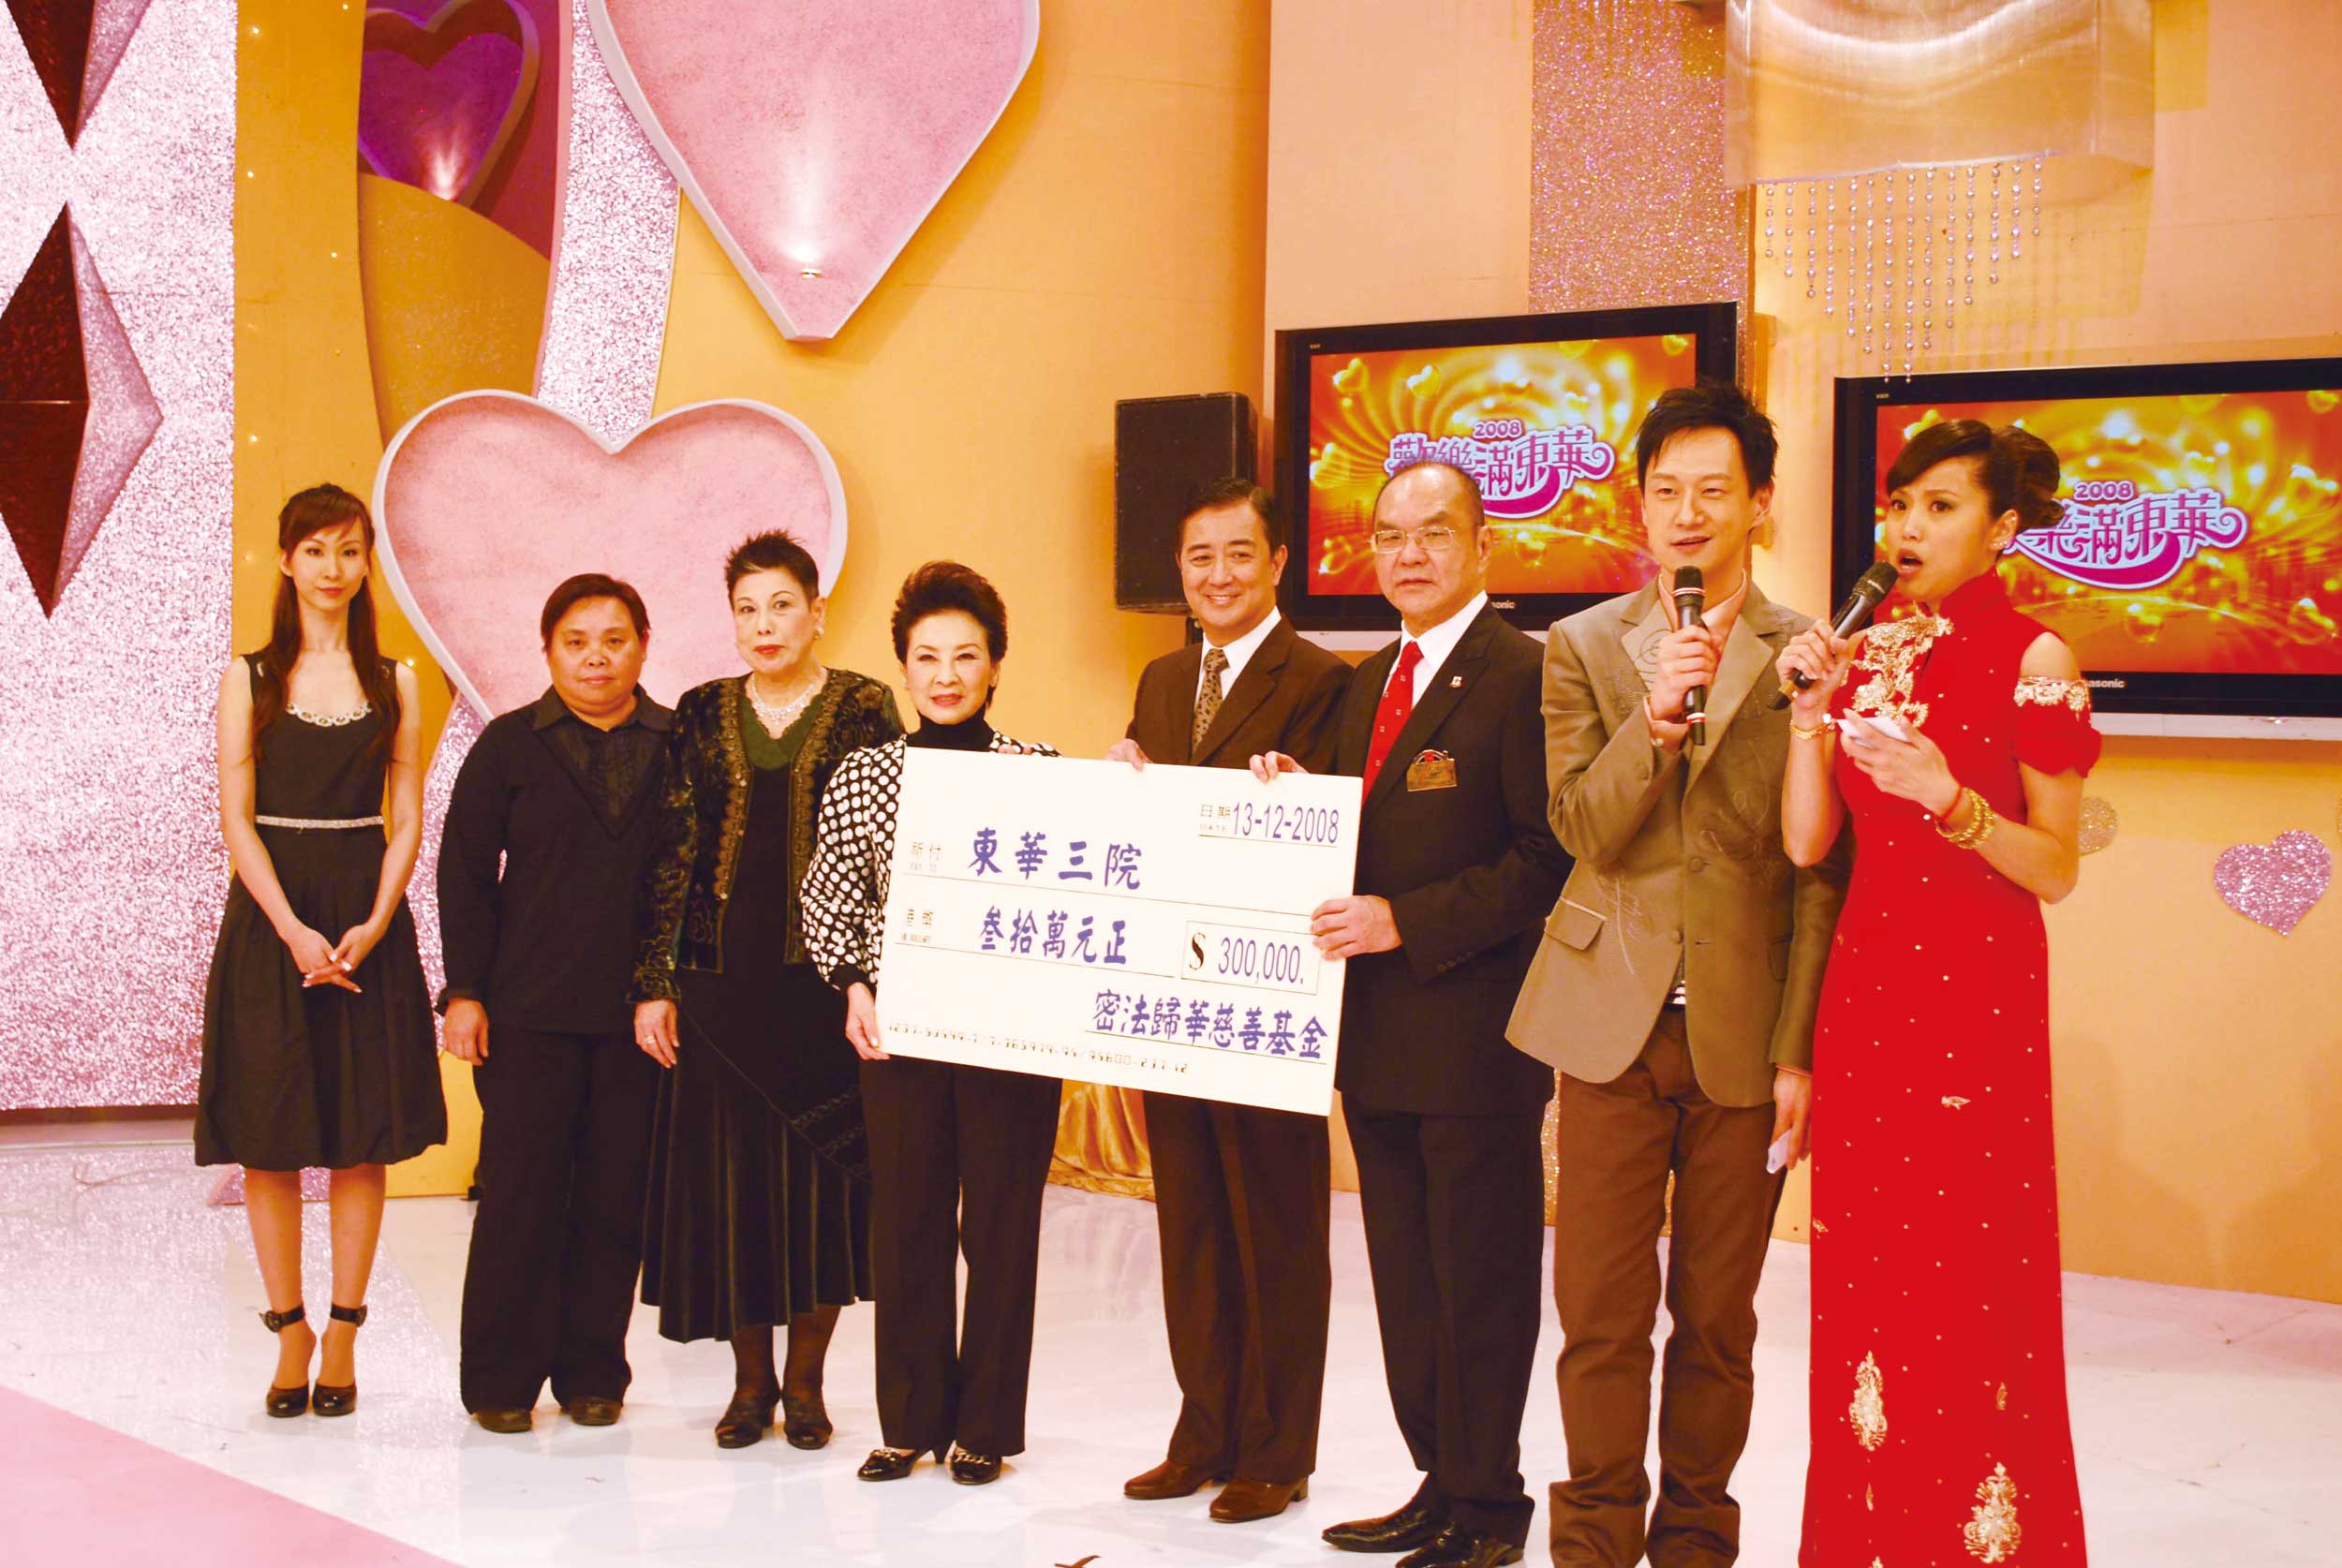 東華三院李三元主席接受慈善捐款。